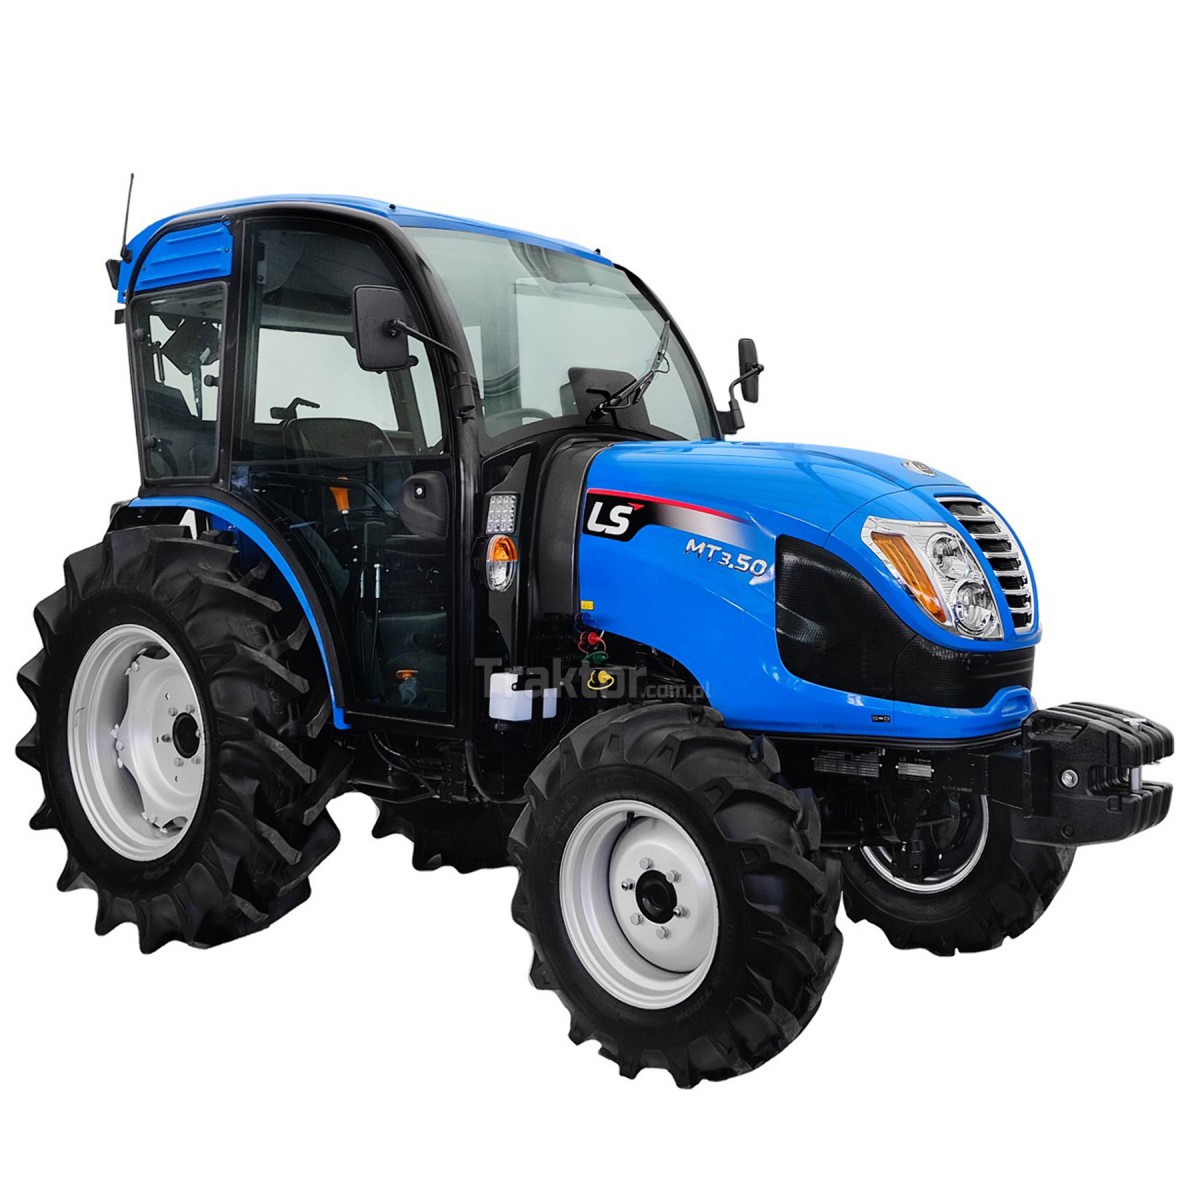 LS Tractor MT3.50 MEC 4x4 - 47 HP / CAB